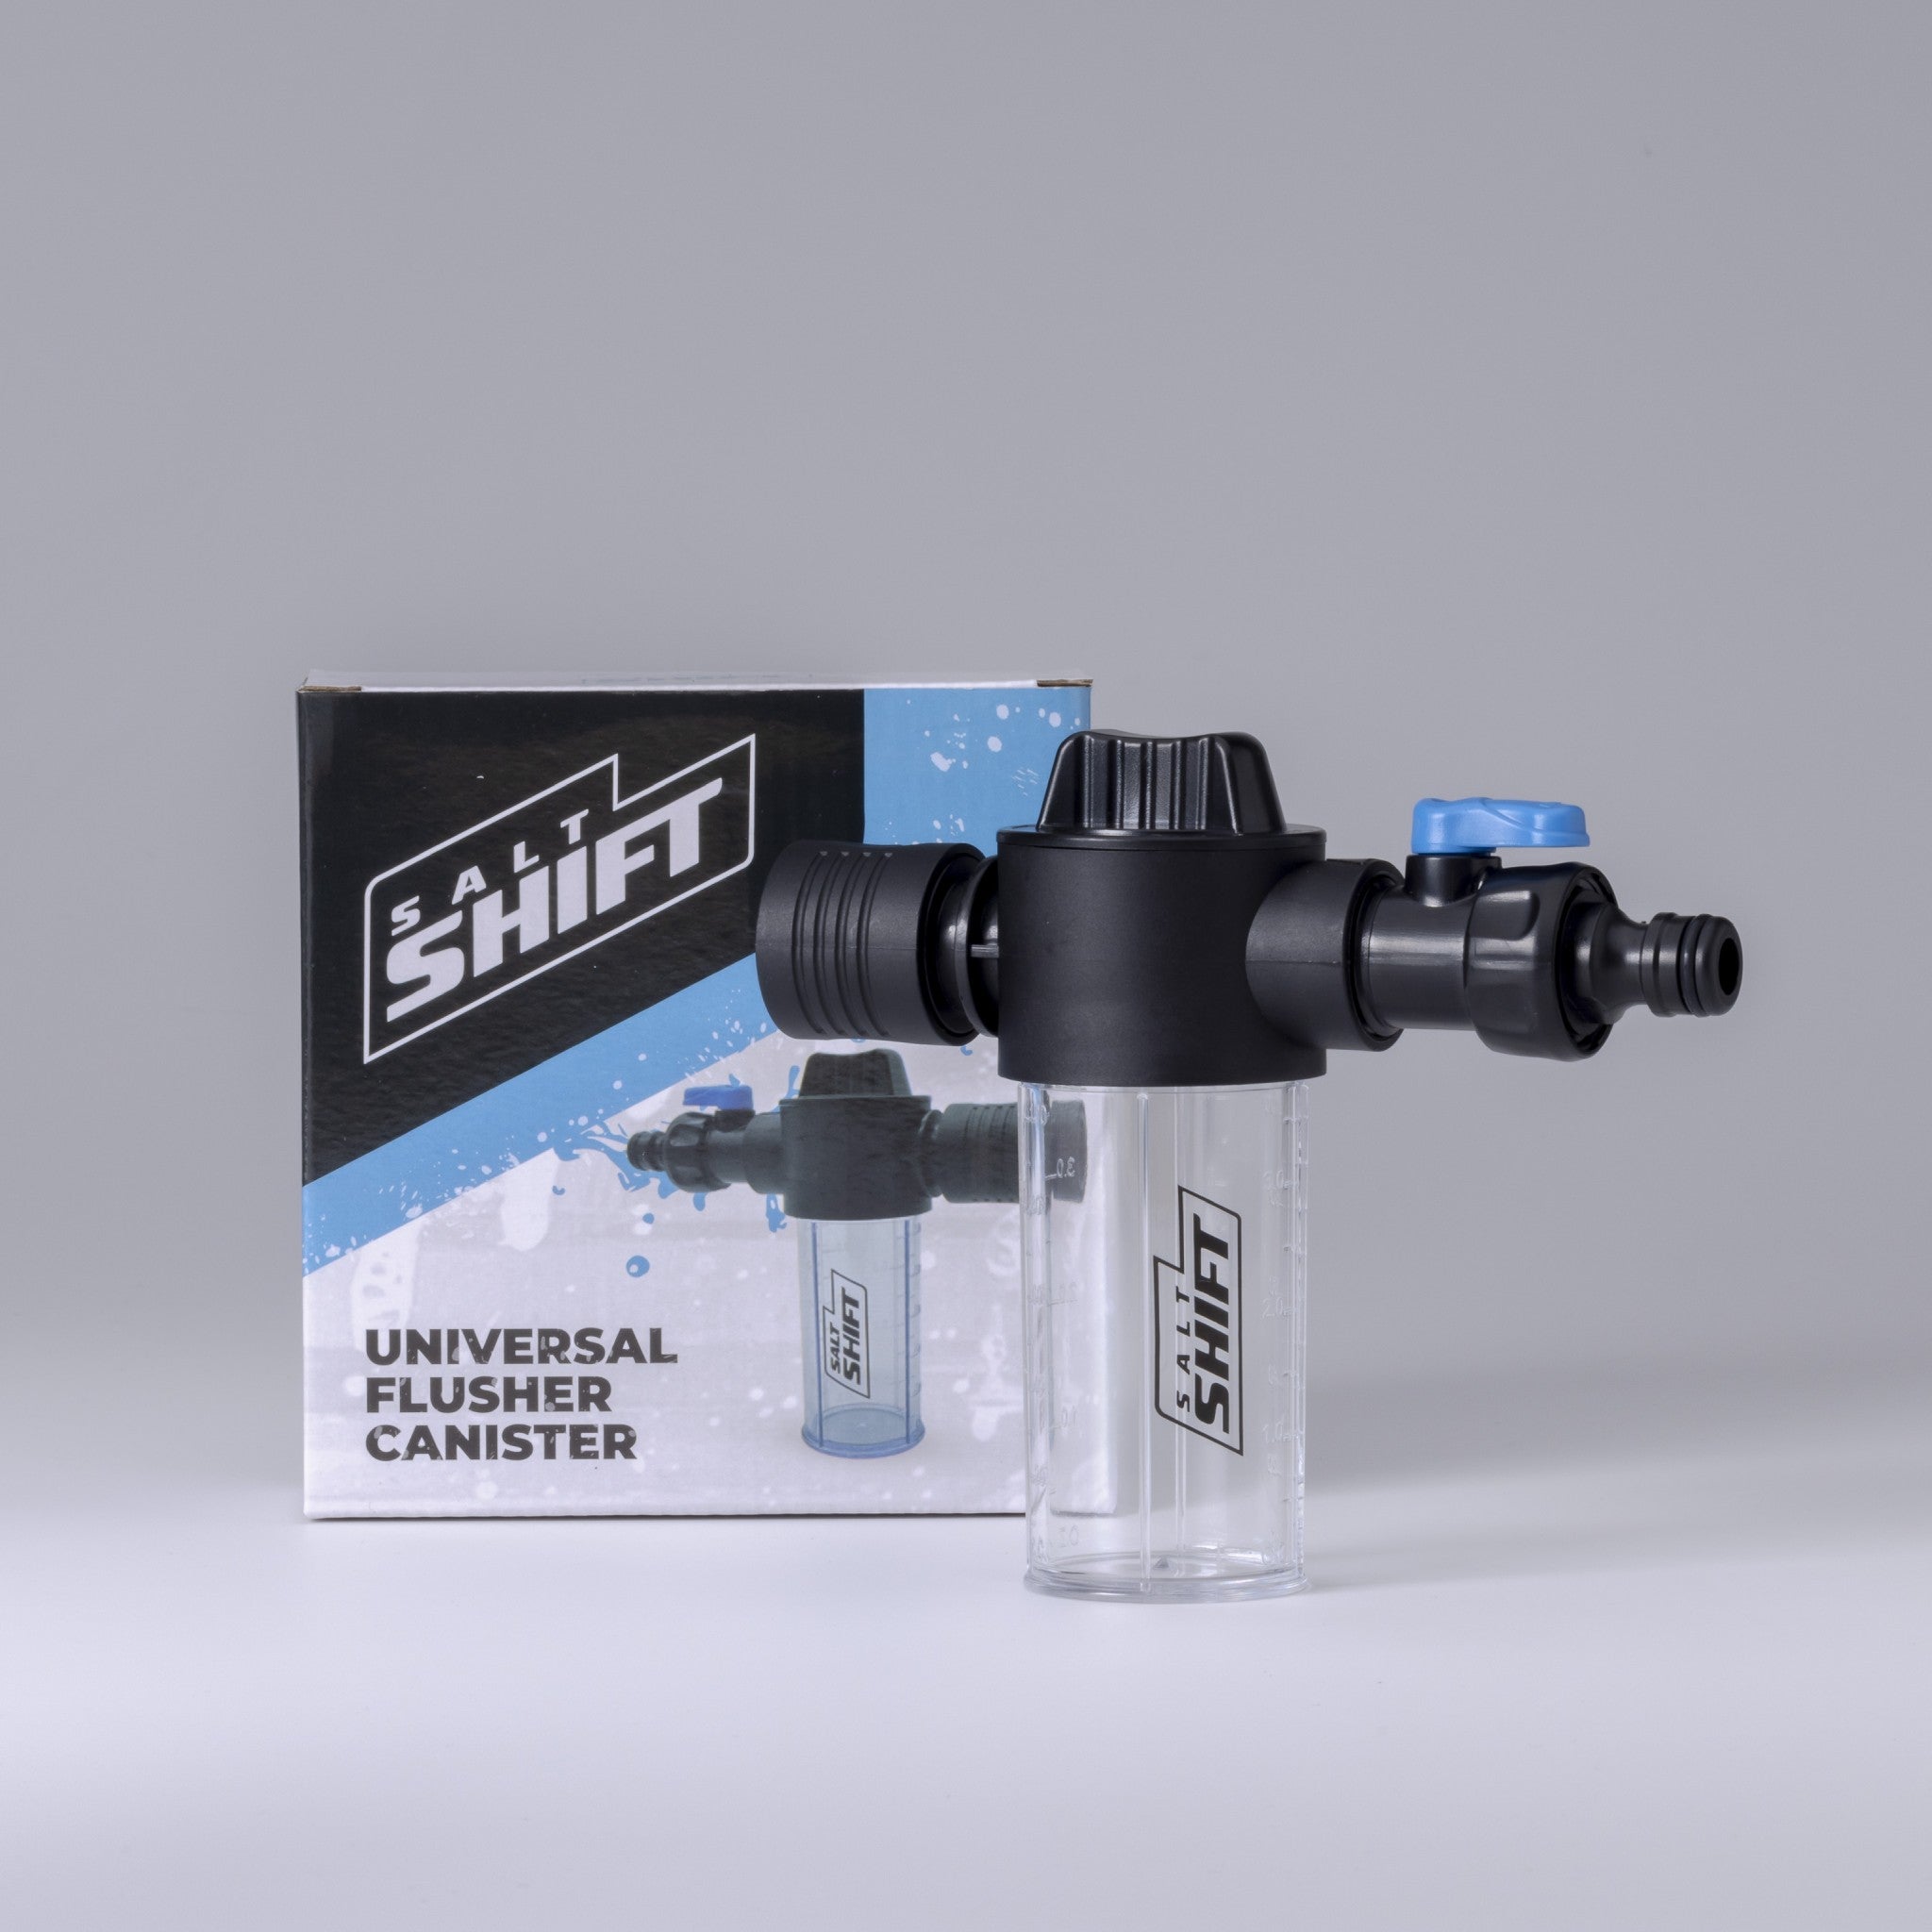 Salt Shift Universal Flusher Canister